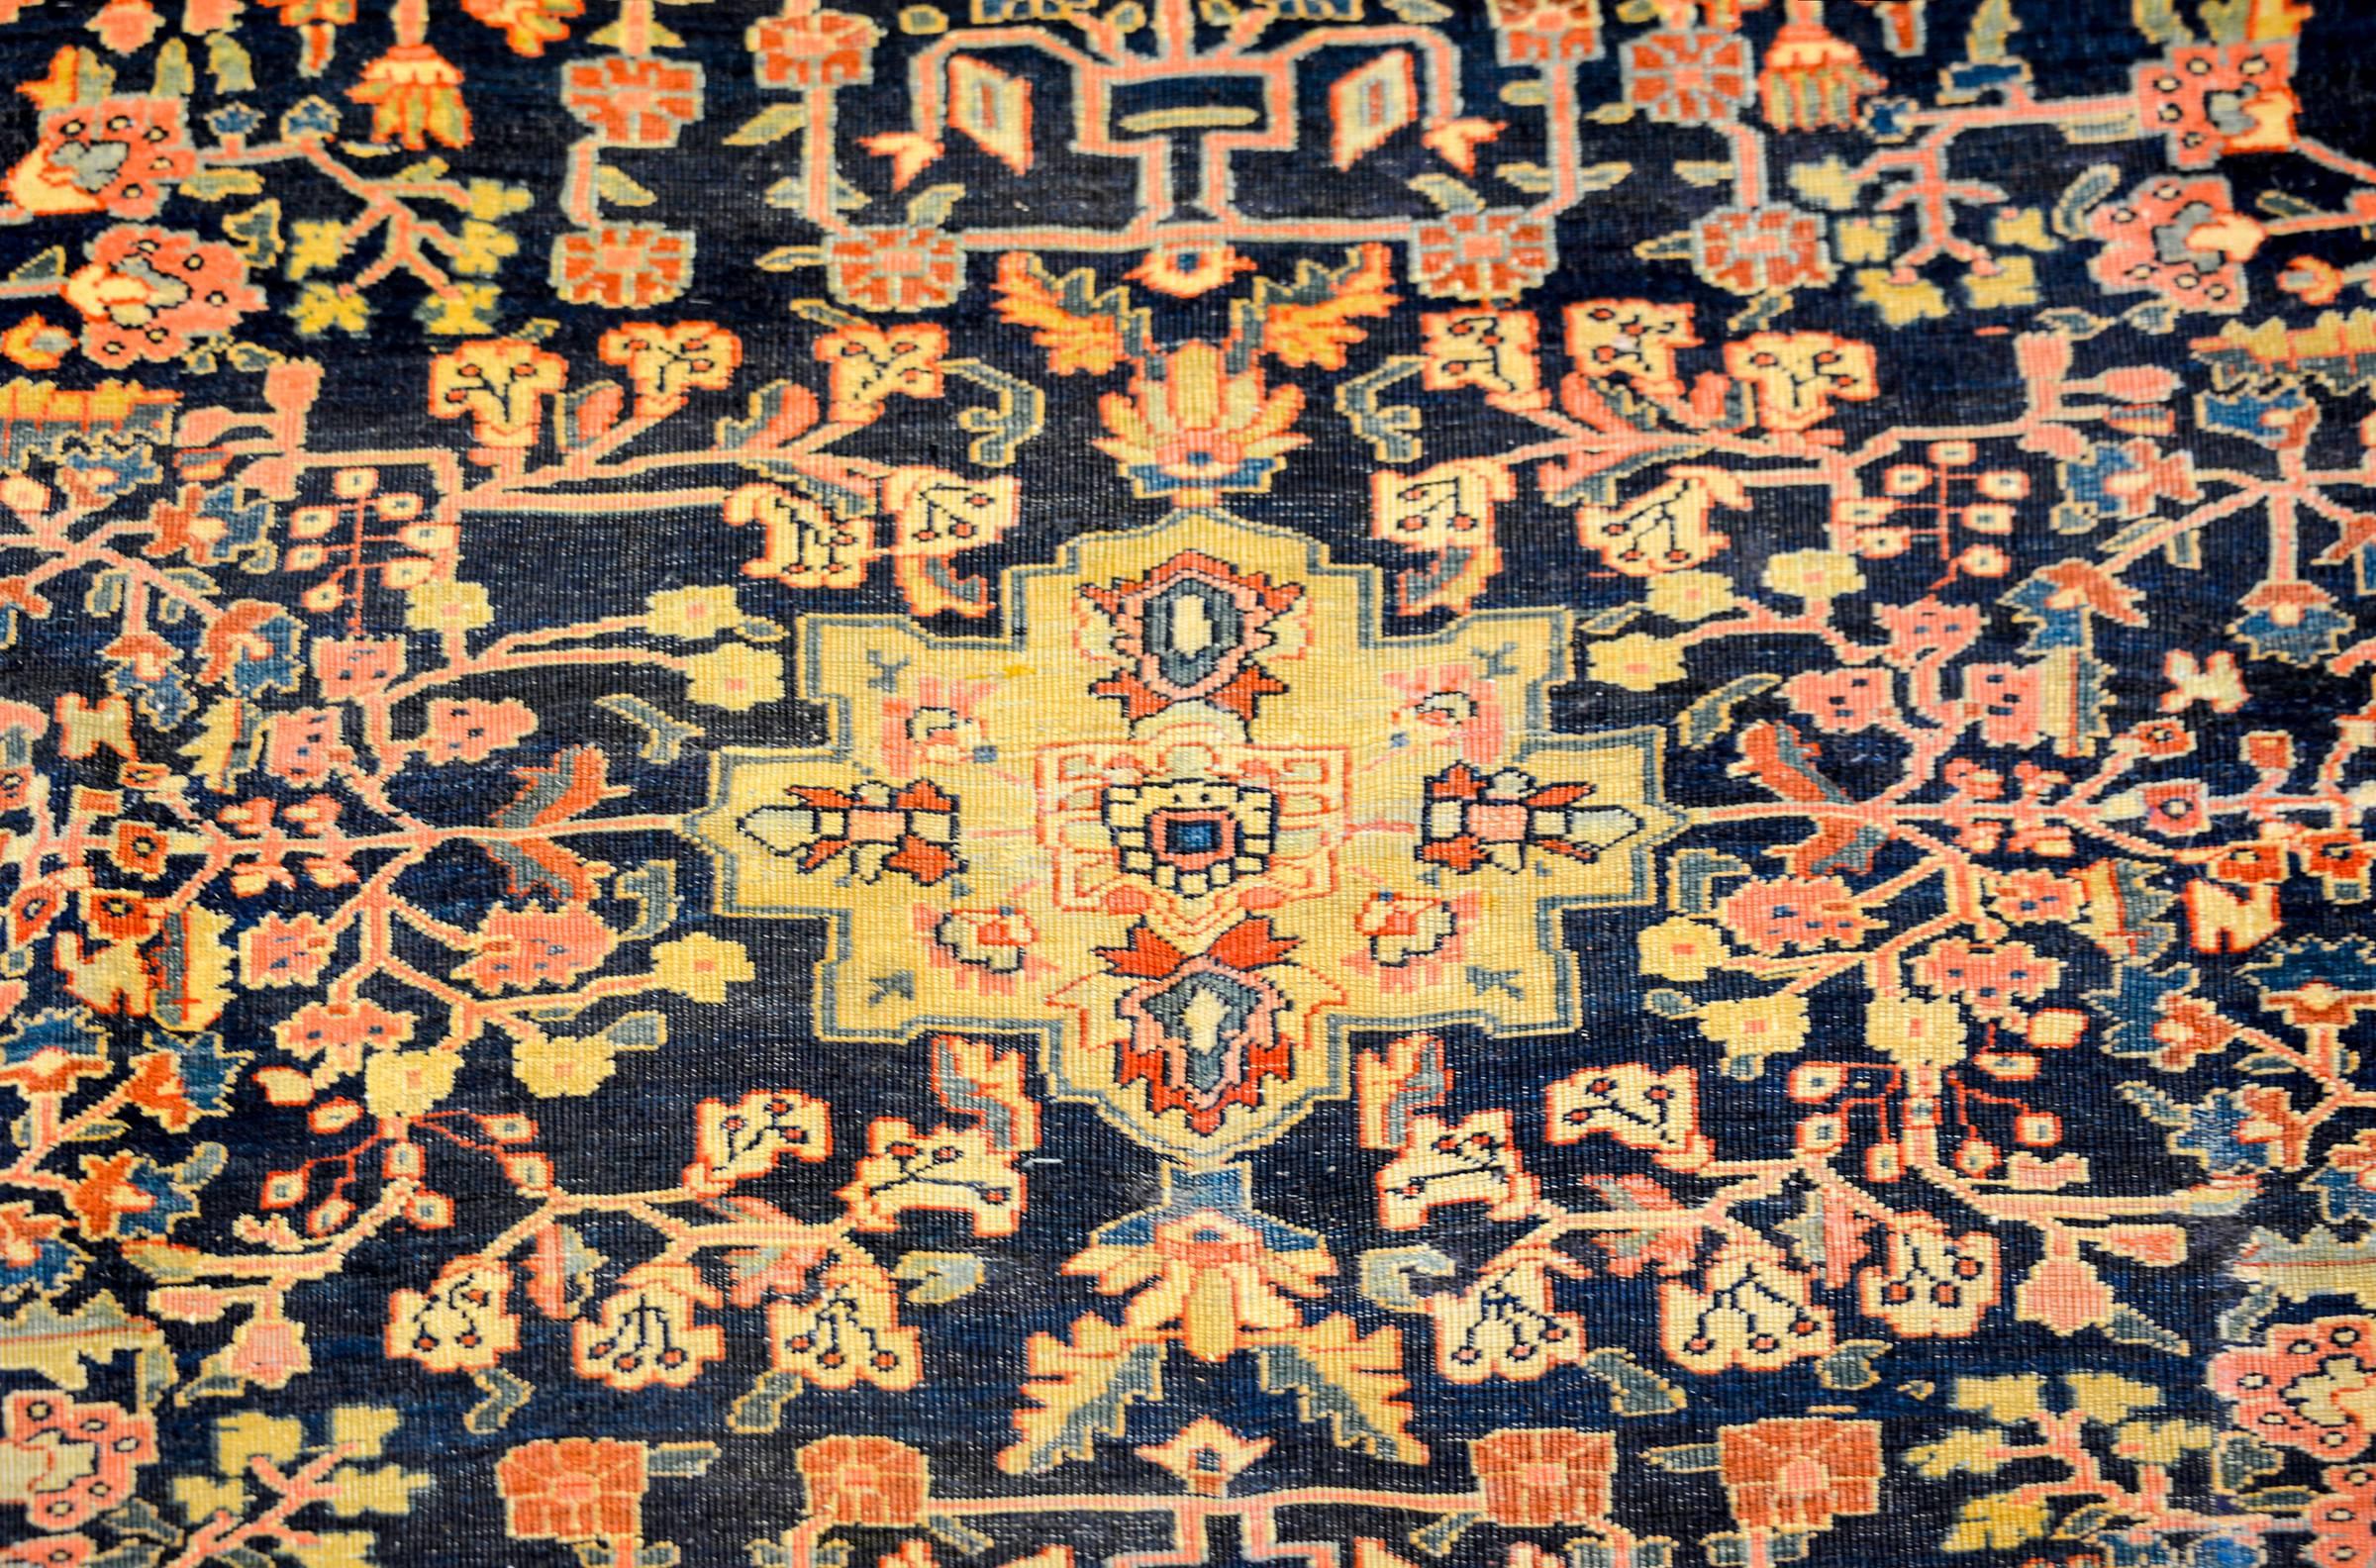 Un incroyable tapis persan Sarouk Farahan datant de la fin du 19e siècle, avec le plus incroyable des motifs floraux et de vigne en treillis, tissé en laine teintée aux légumes de couleur indigo clair et foncé, cramoisi, or et vert, sur un fond